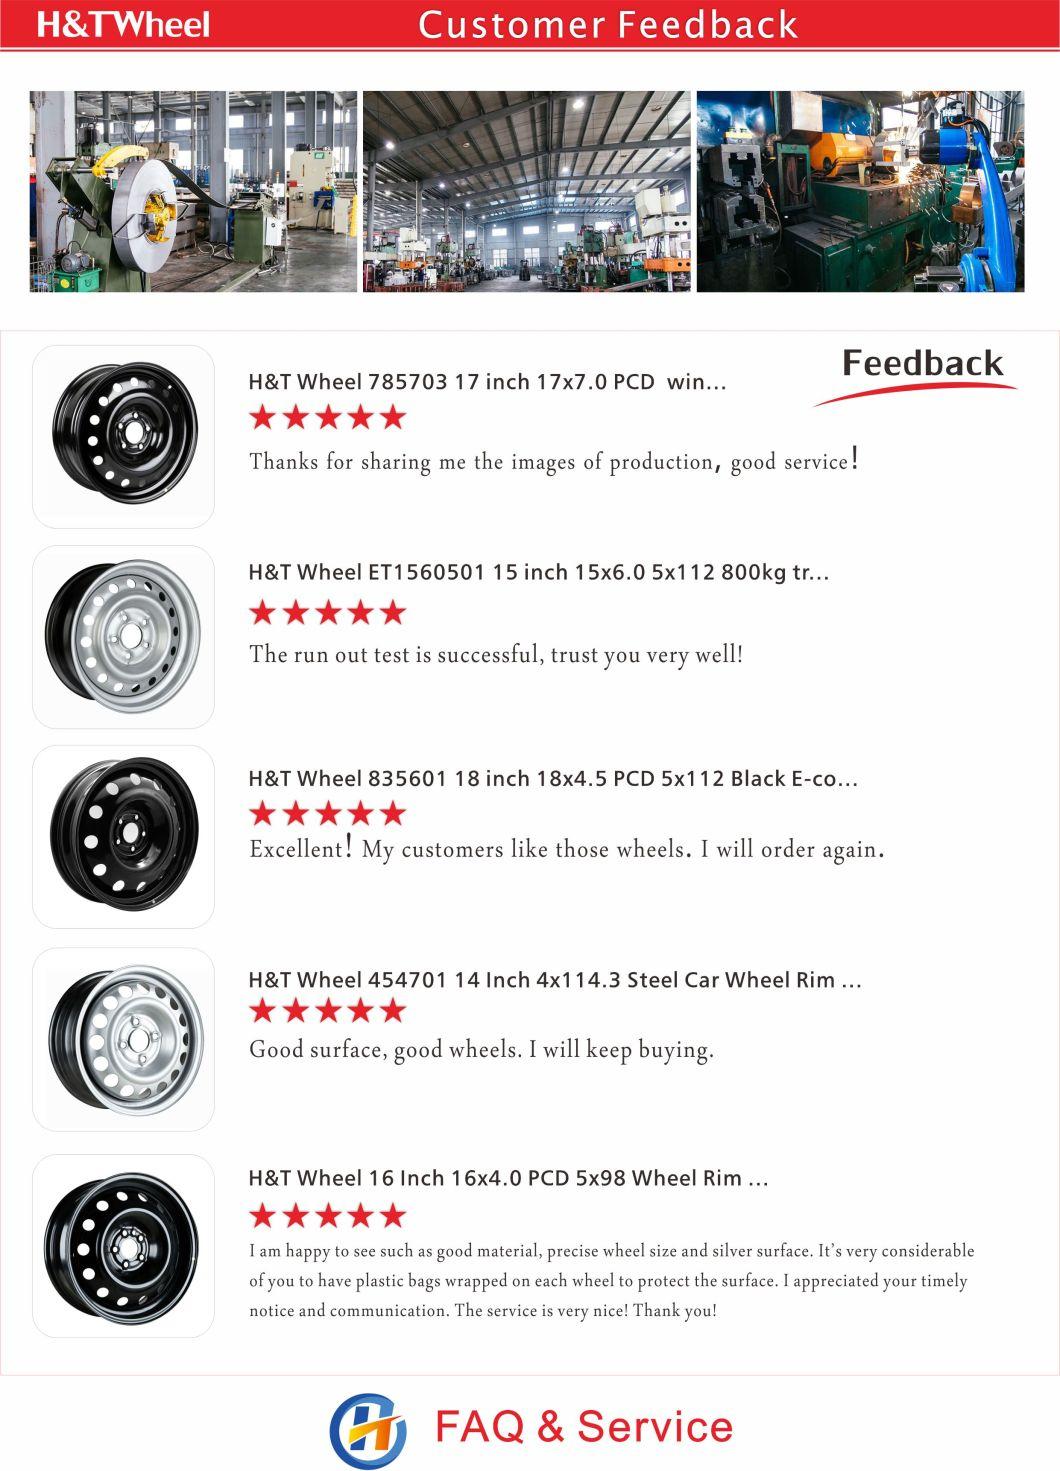 H&T Wheel 565503 15 Inch 15X6.0 5X110 Black or Silver Steel Wheel Rim for Car